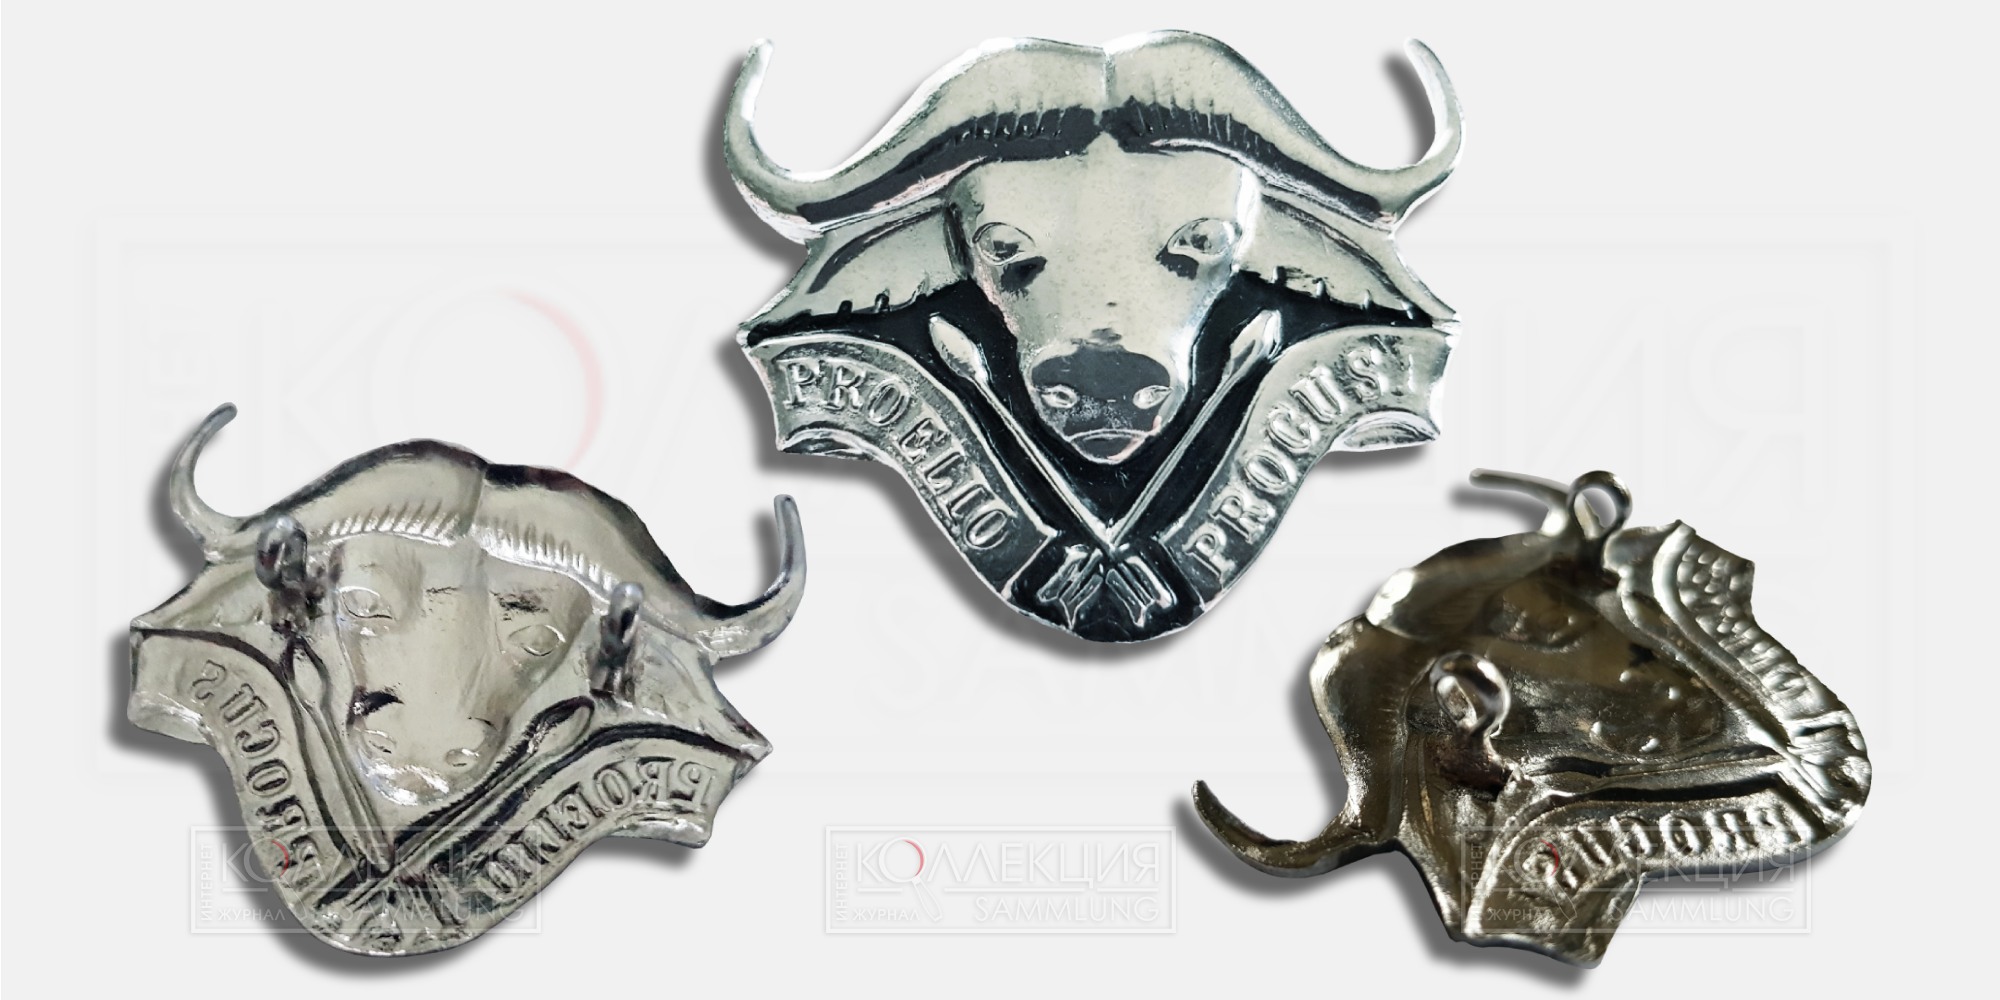 Кокарда 32-го батальона «Buffalo» (1975—1993) ЮАР с девизом «Proelio Procusi» (с лат. «Выкованы в битве»). Коллекция Михаила Тренихина